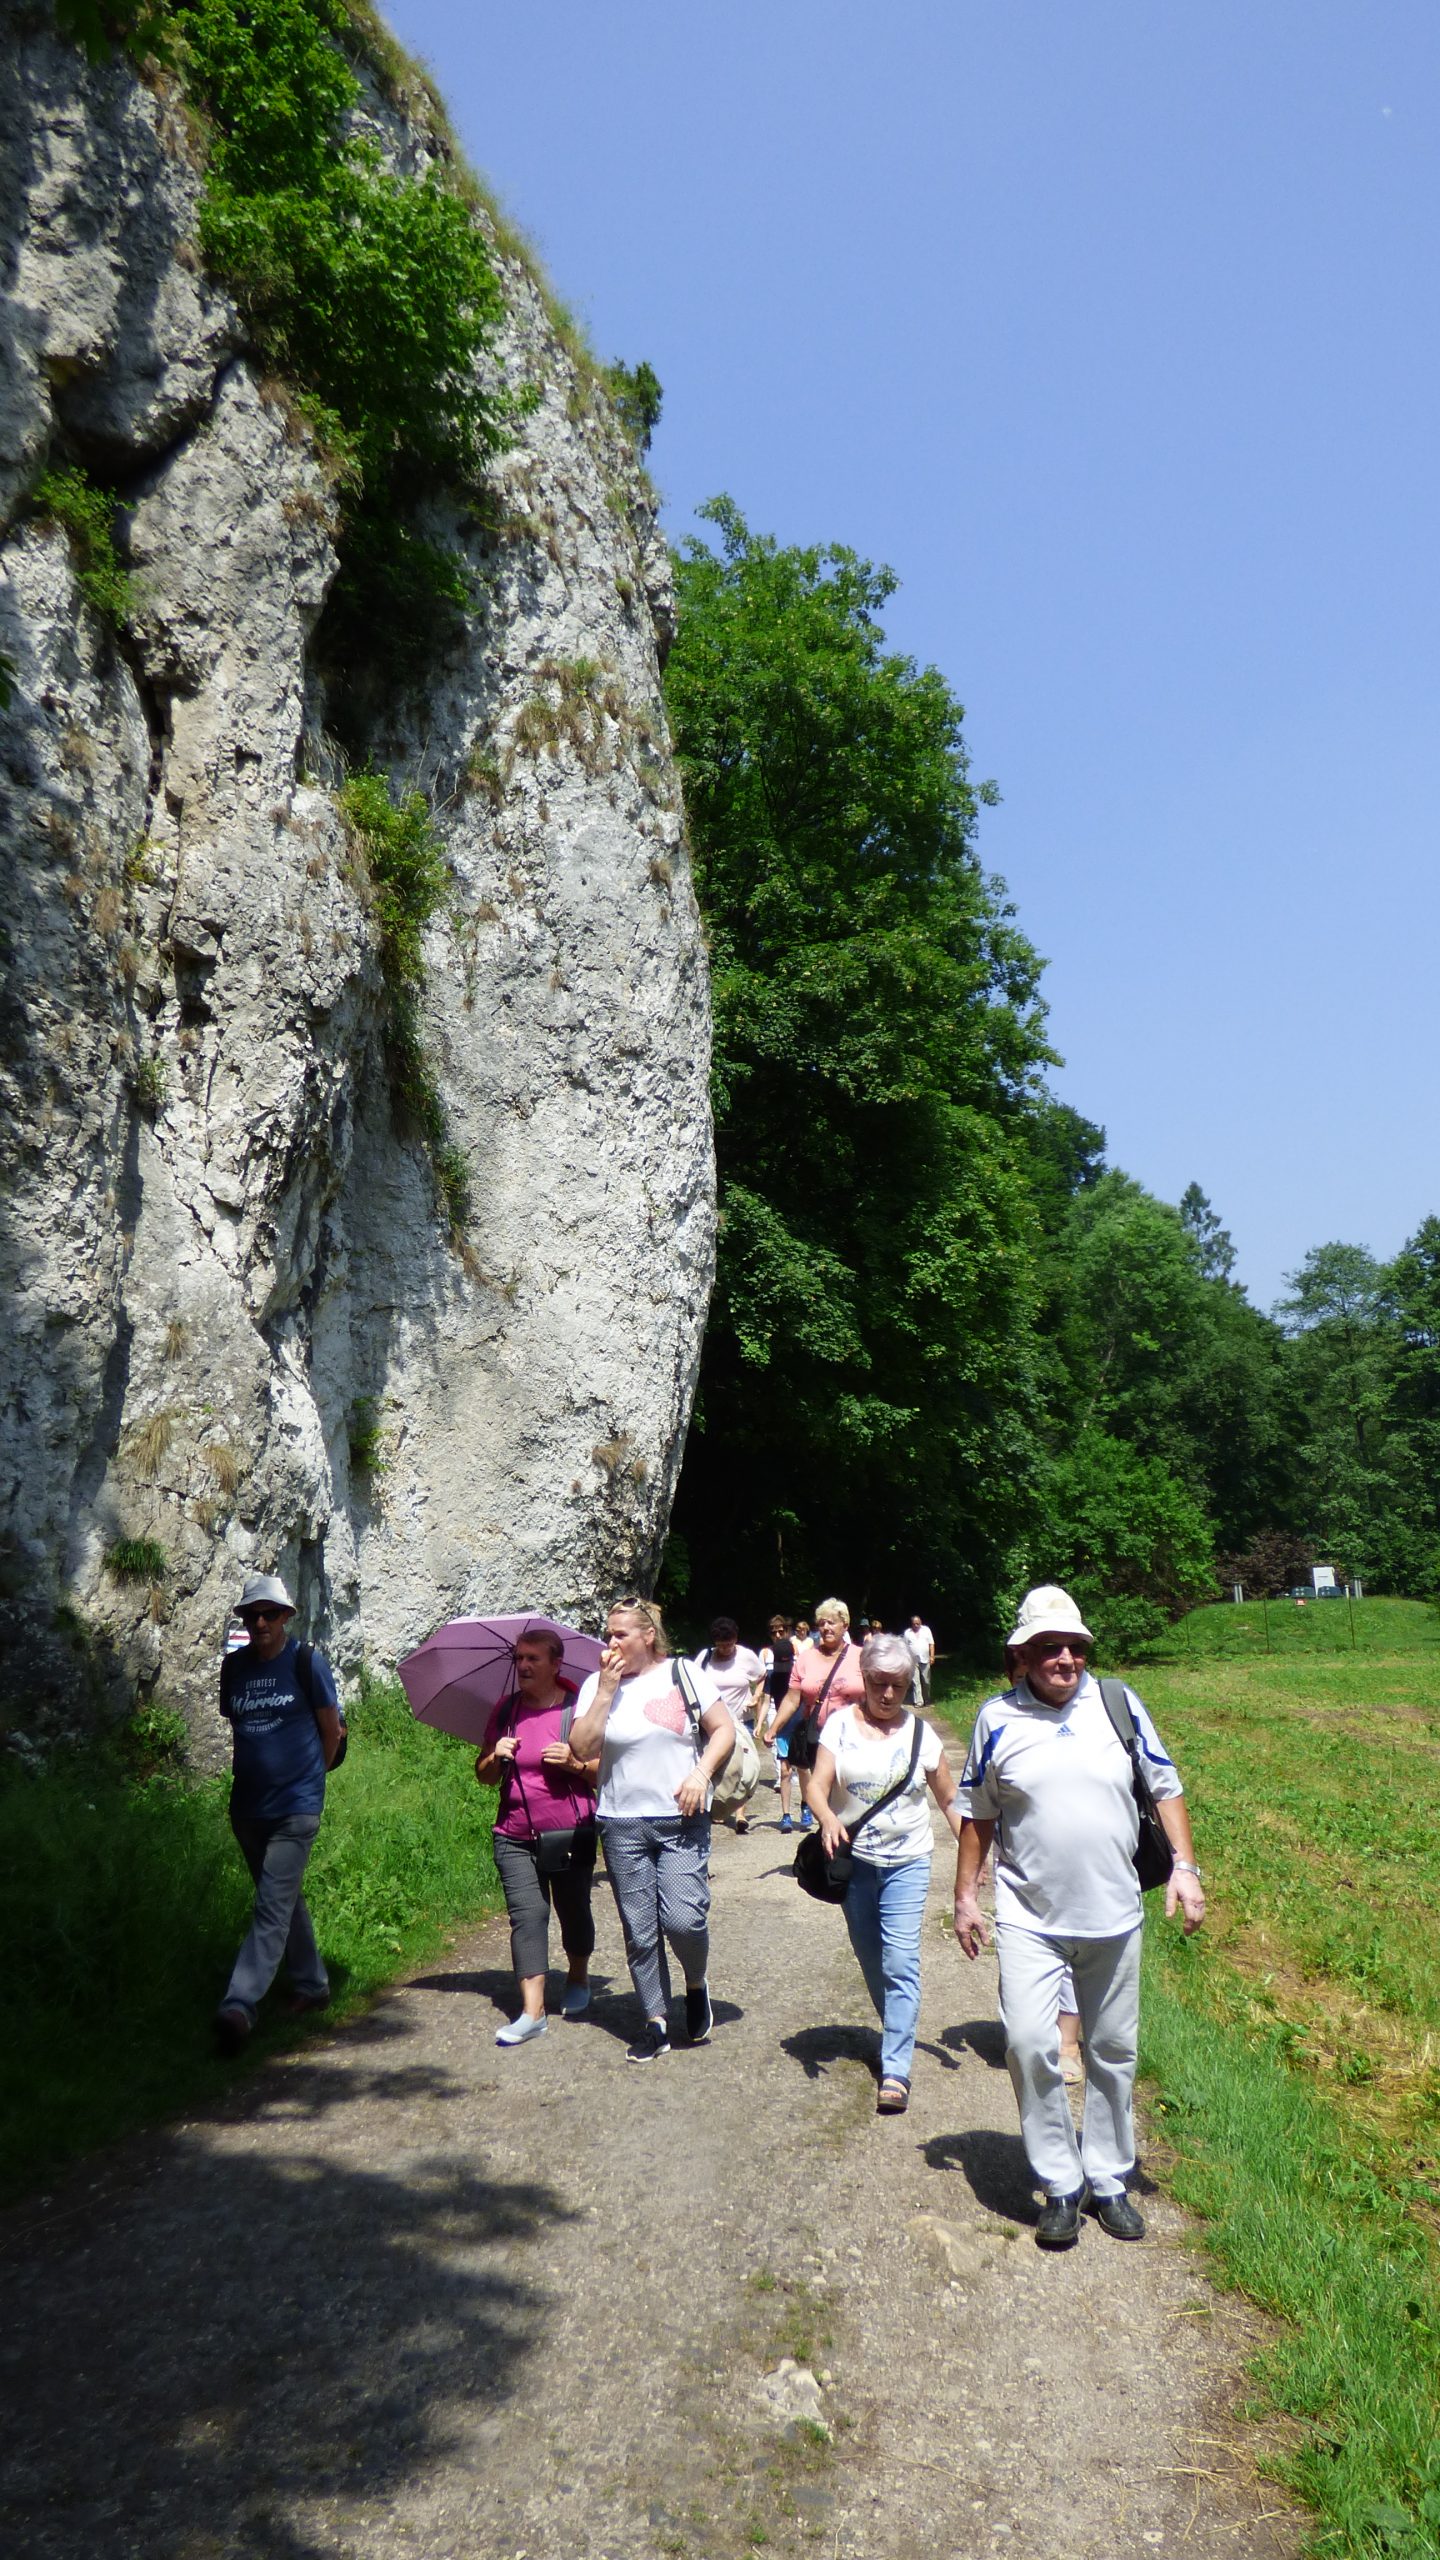 Na zdjęciu uczestnicy wycieczki spacerują po terenie parku, przechodzą obok skał.